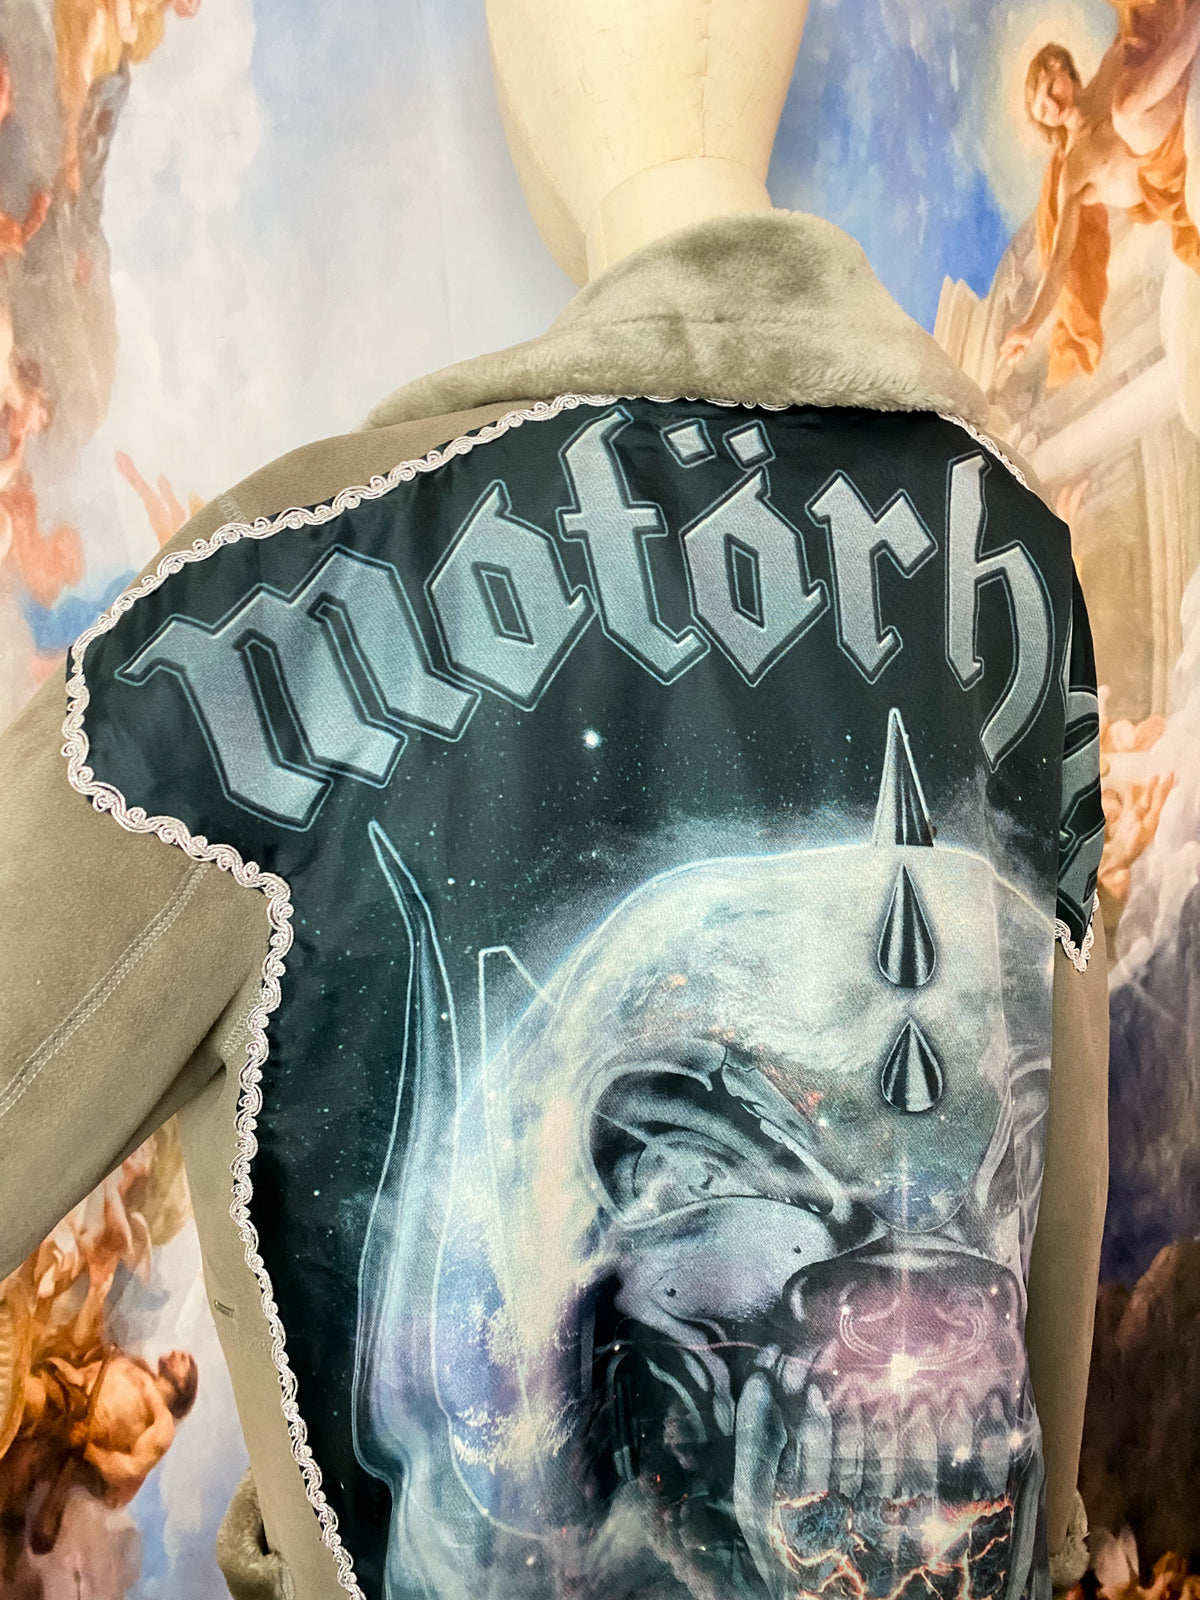 the Motörhead coat